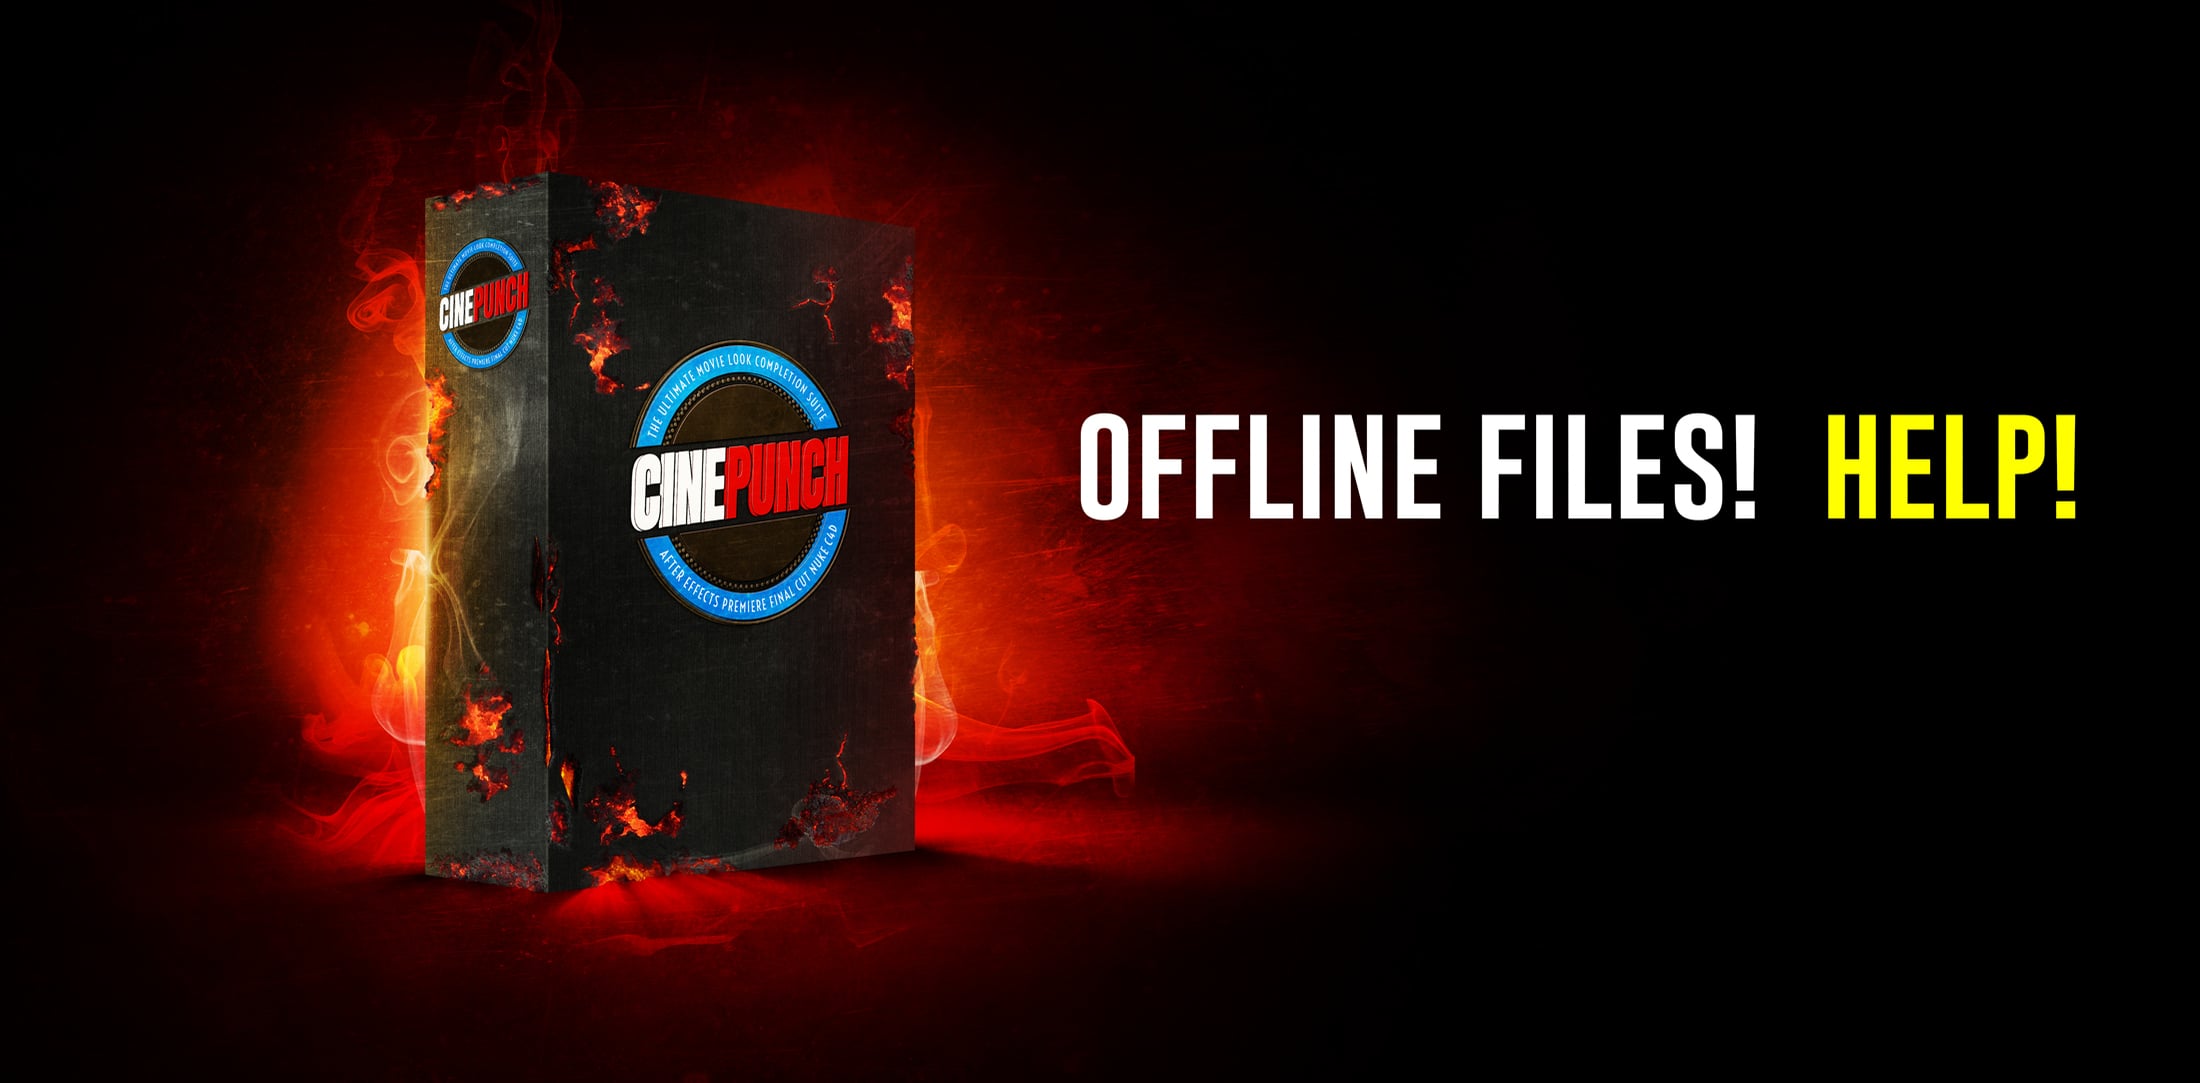 Offline files